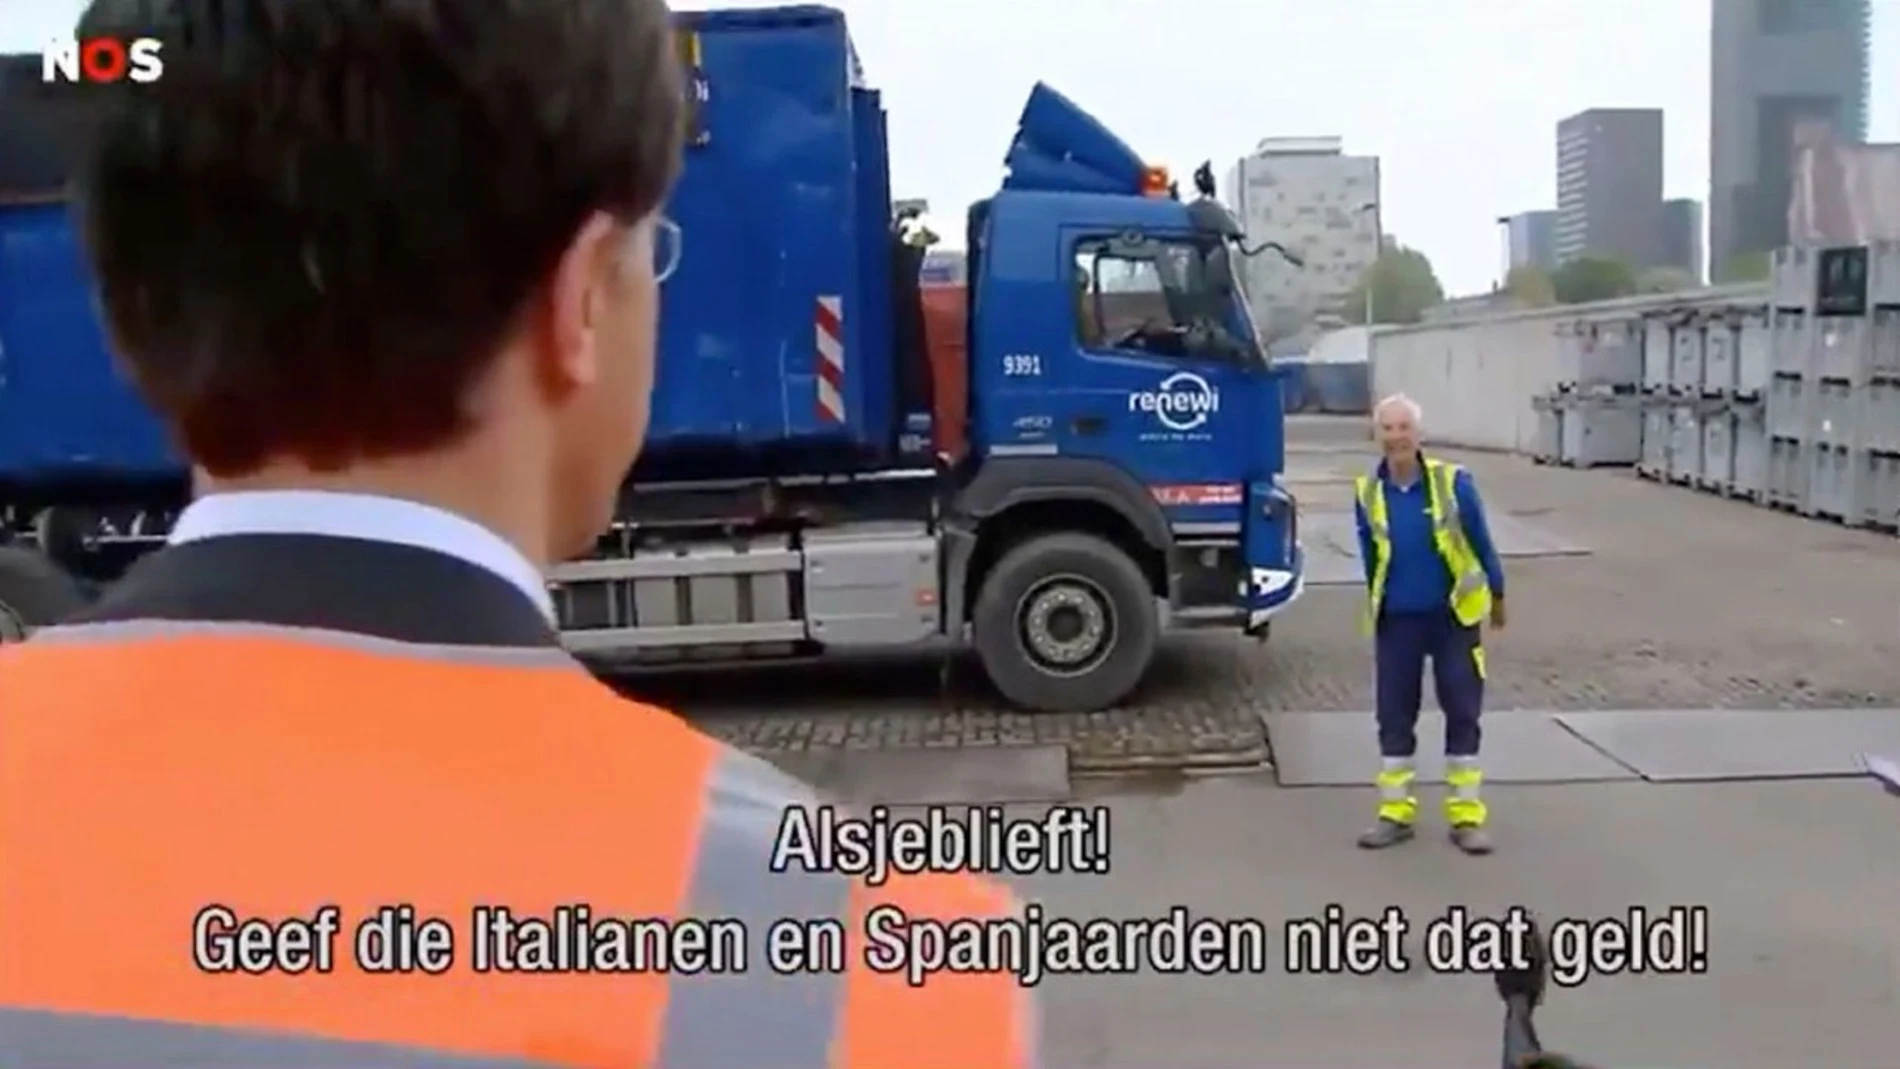 El primer ministro holandés Rutte con un basurero de La Haya que le pide no dar dinero a españolas e italianos